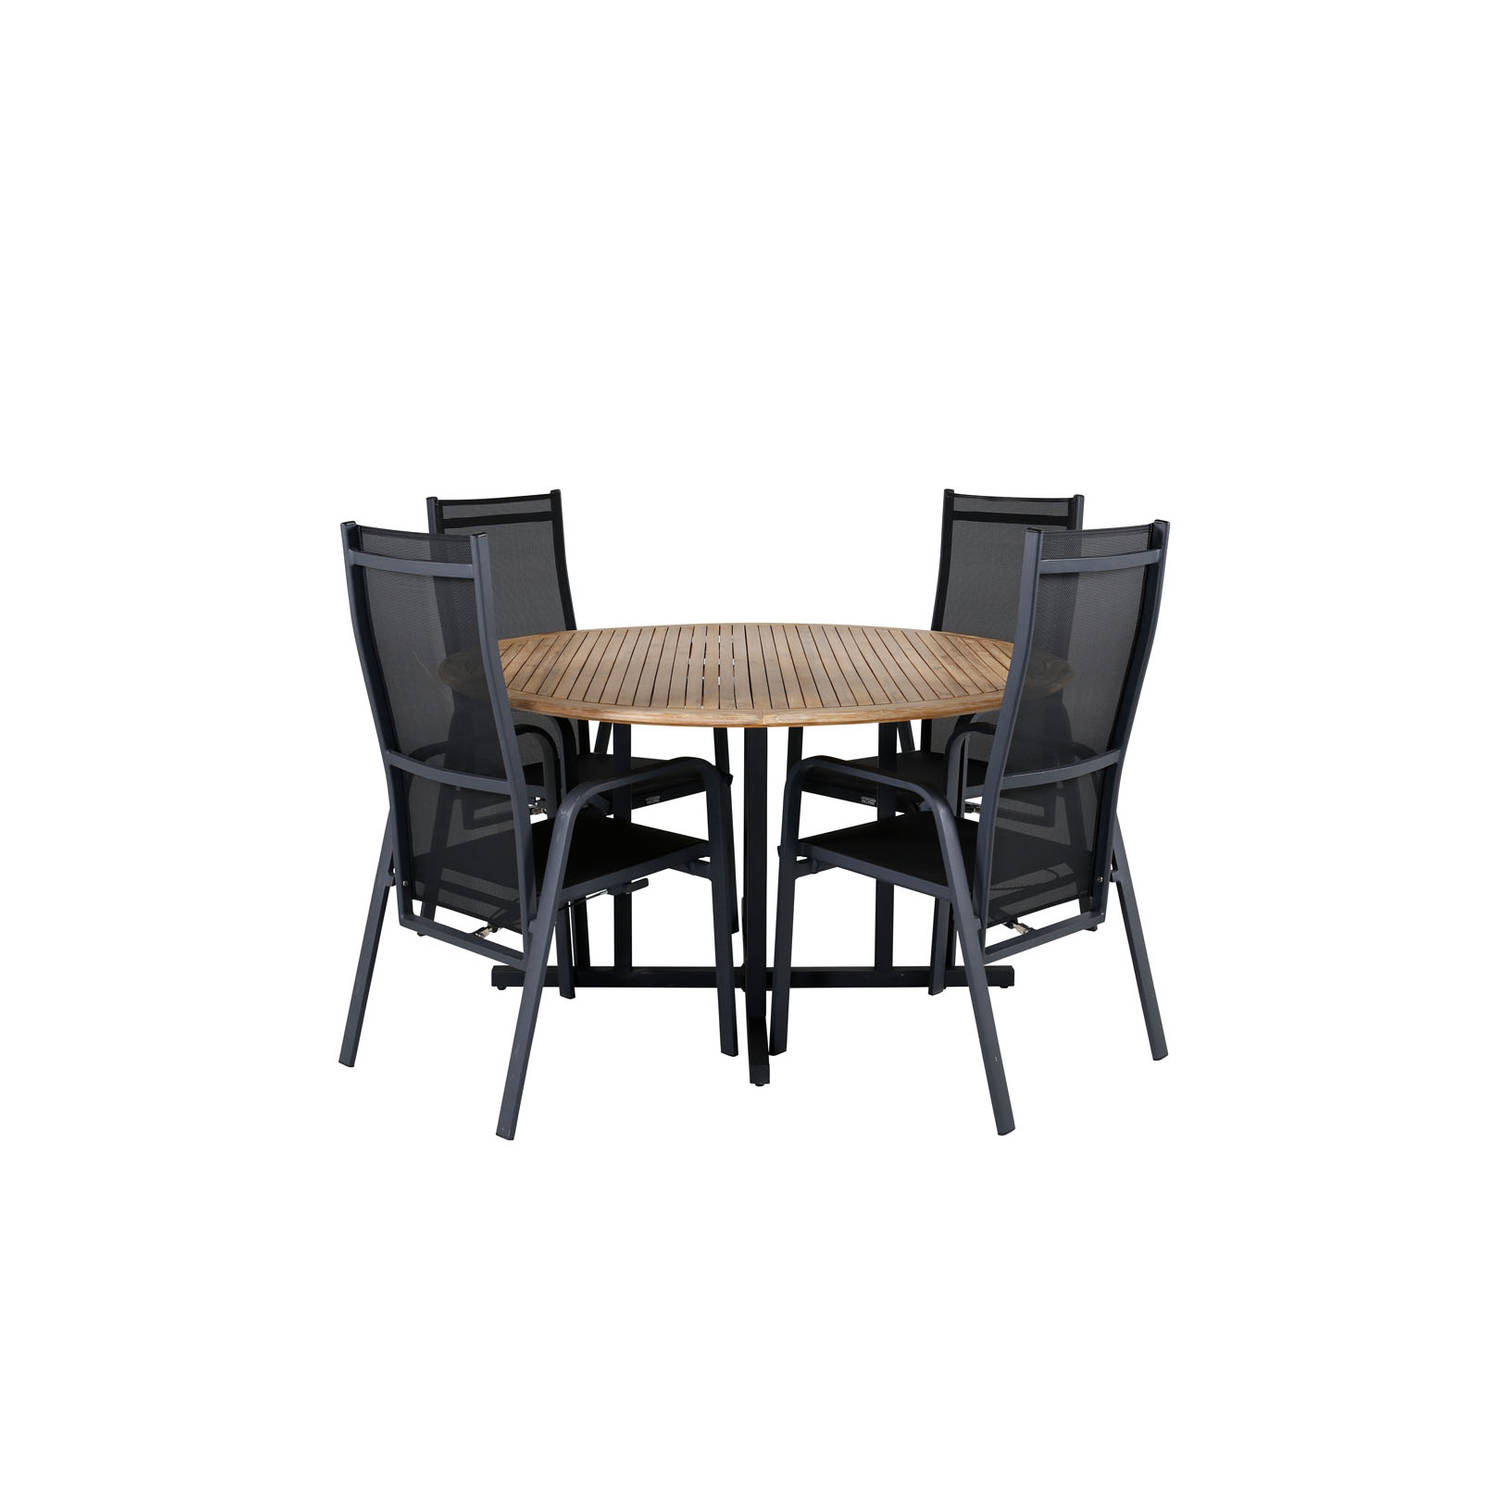 Cruz tuinmeubelset tafel Ø140cm en 4 stoel Copacabana zwart, naturel.